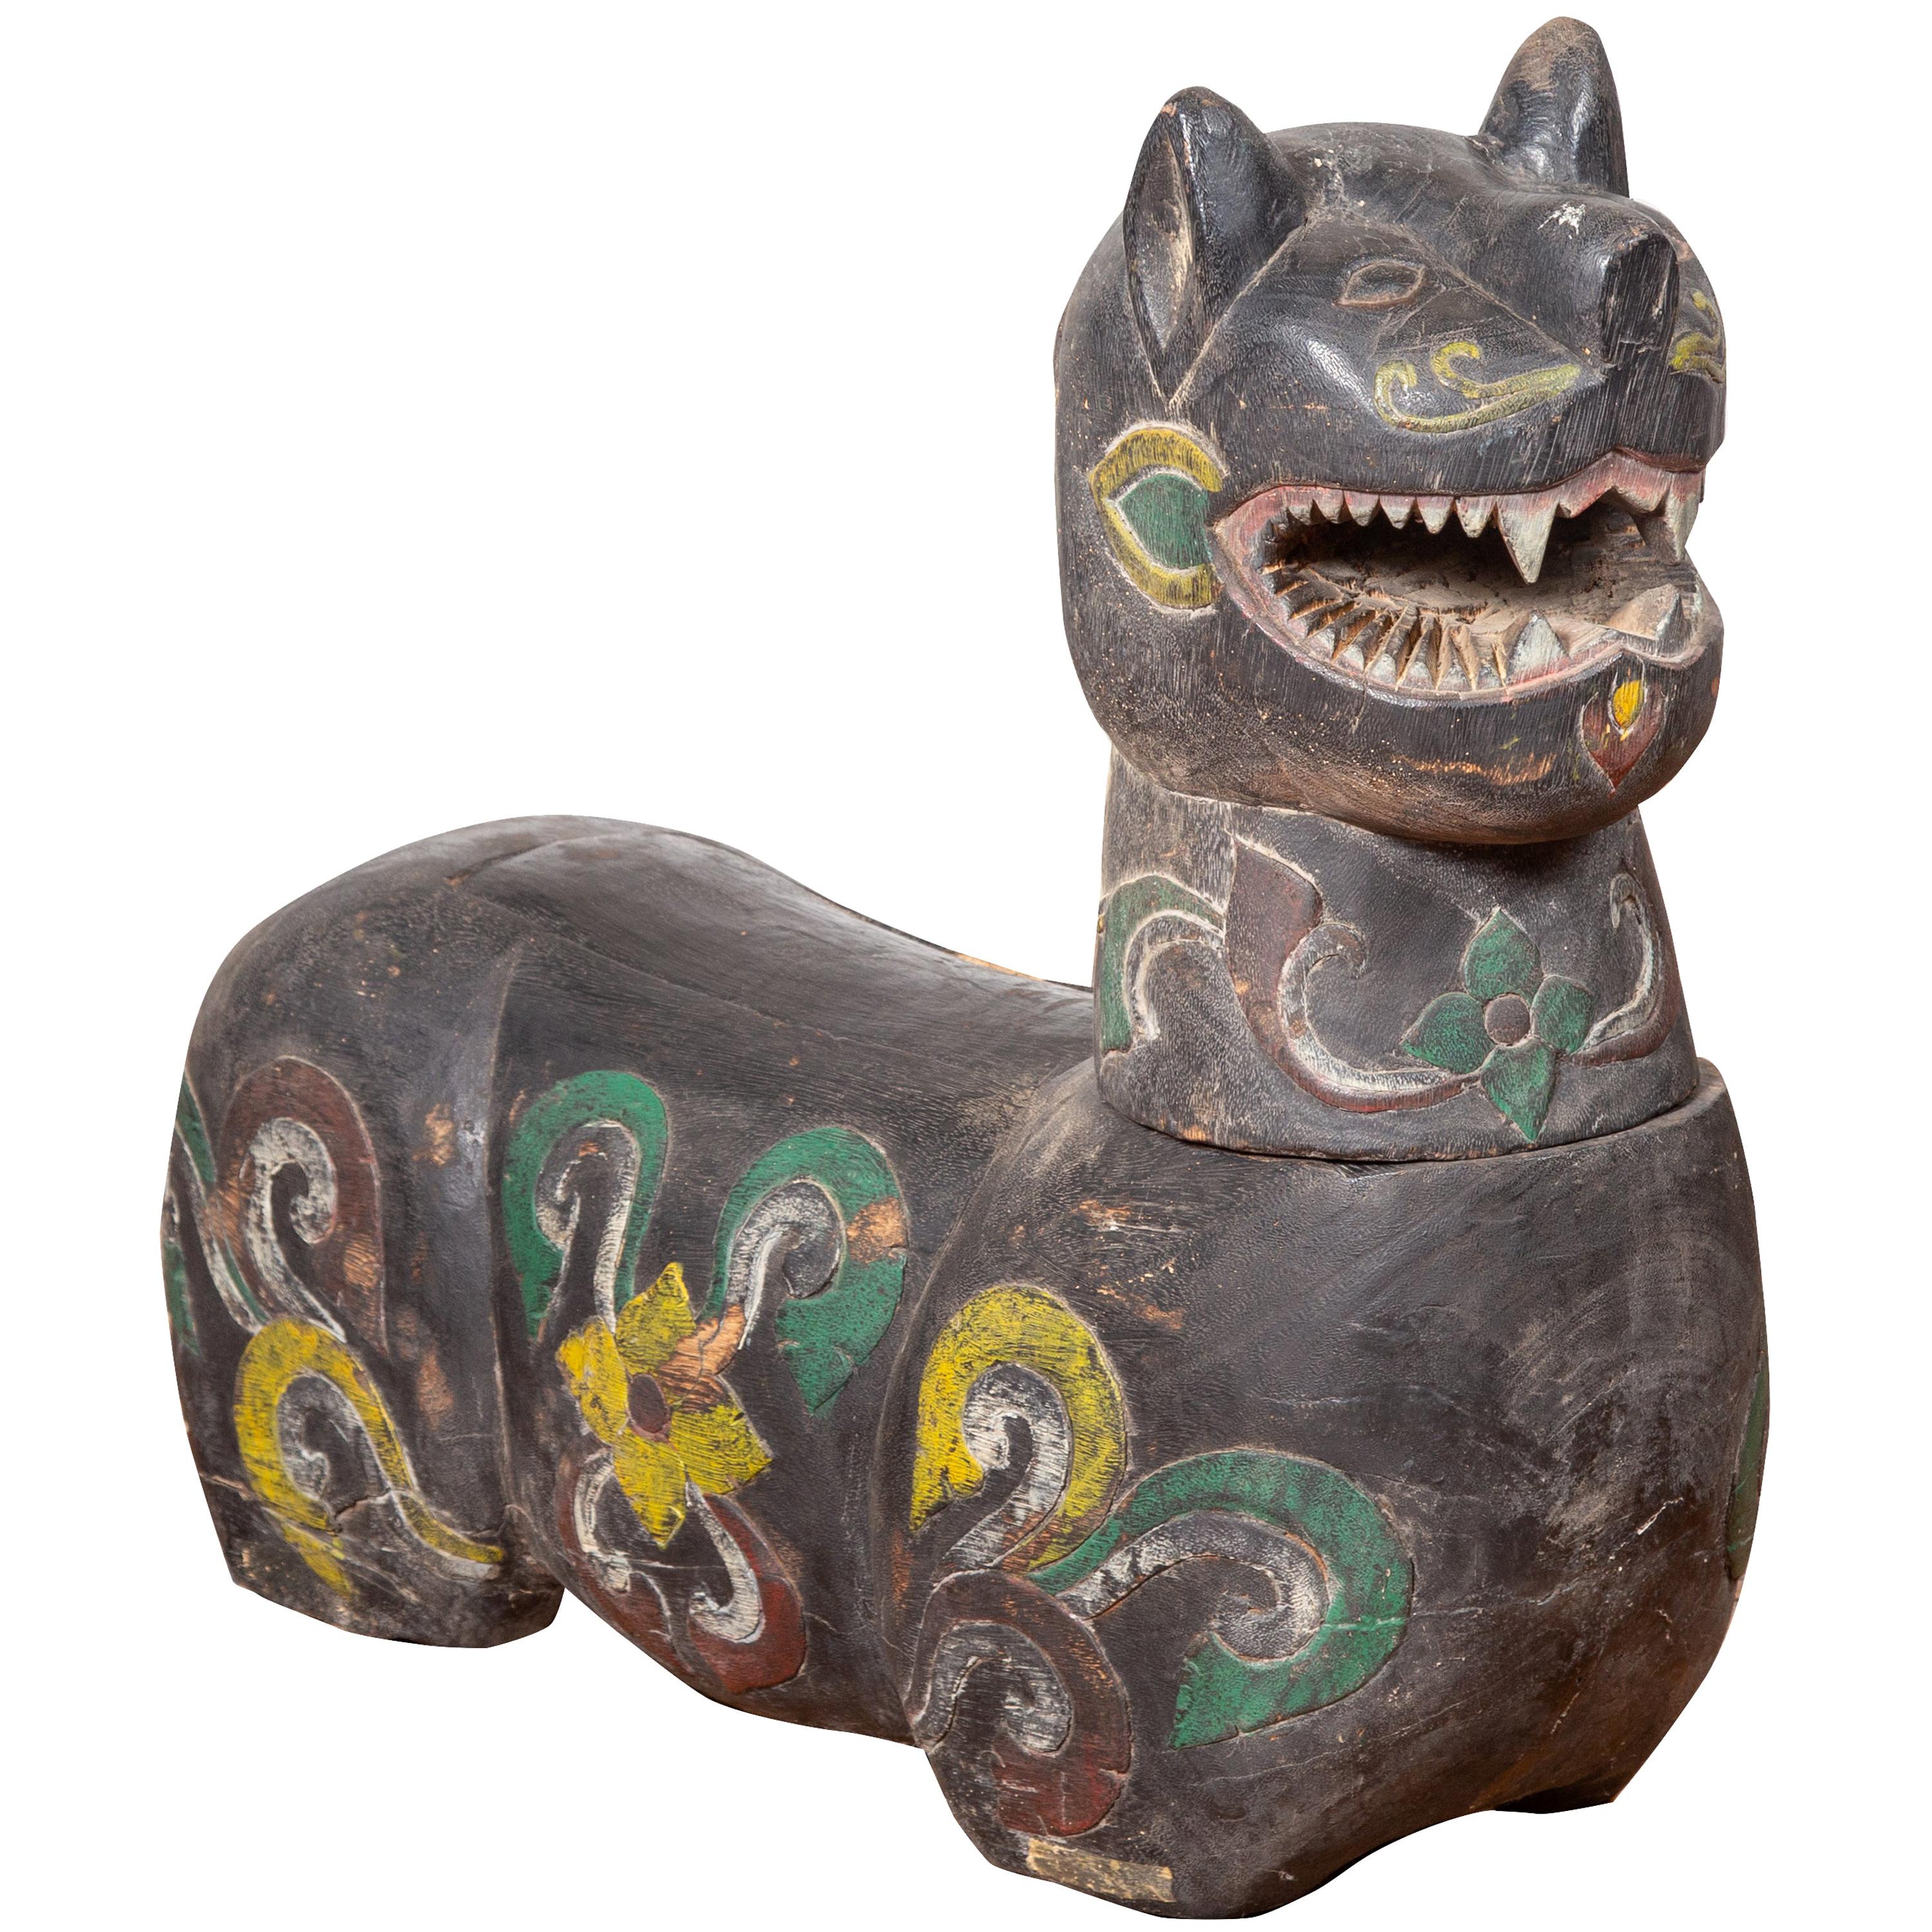 Ancien animal gardien mythique du nord de la Thaïlande Chiang Mai sculpté et polychrome